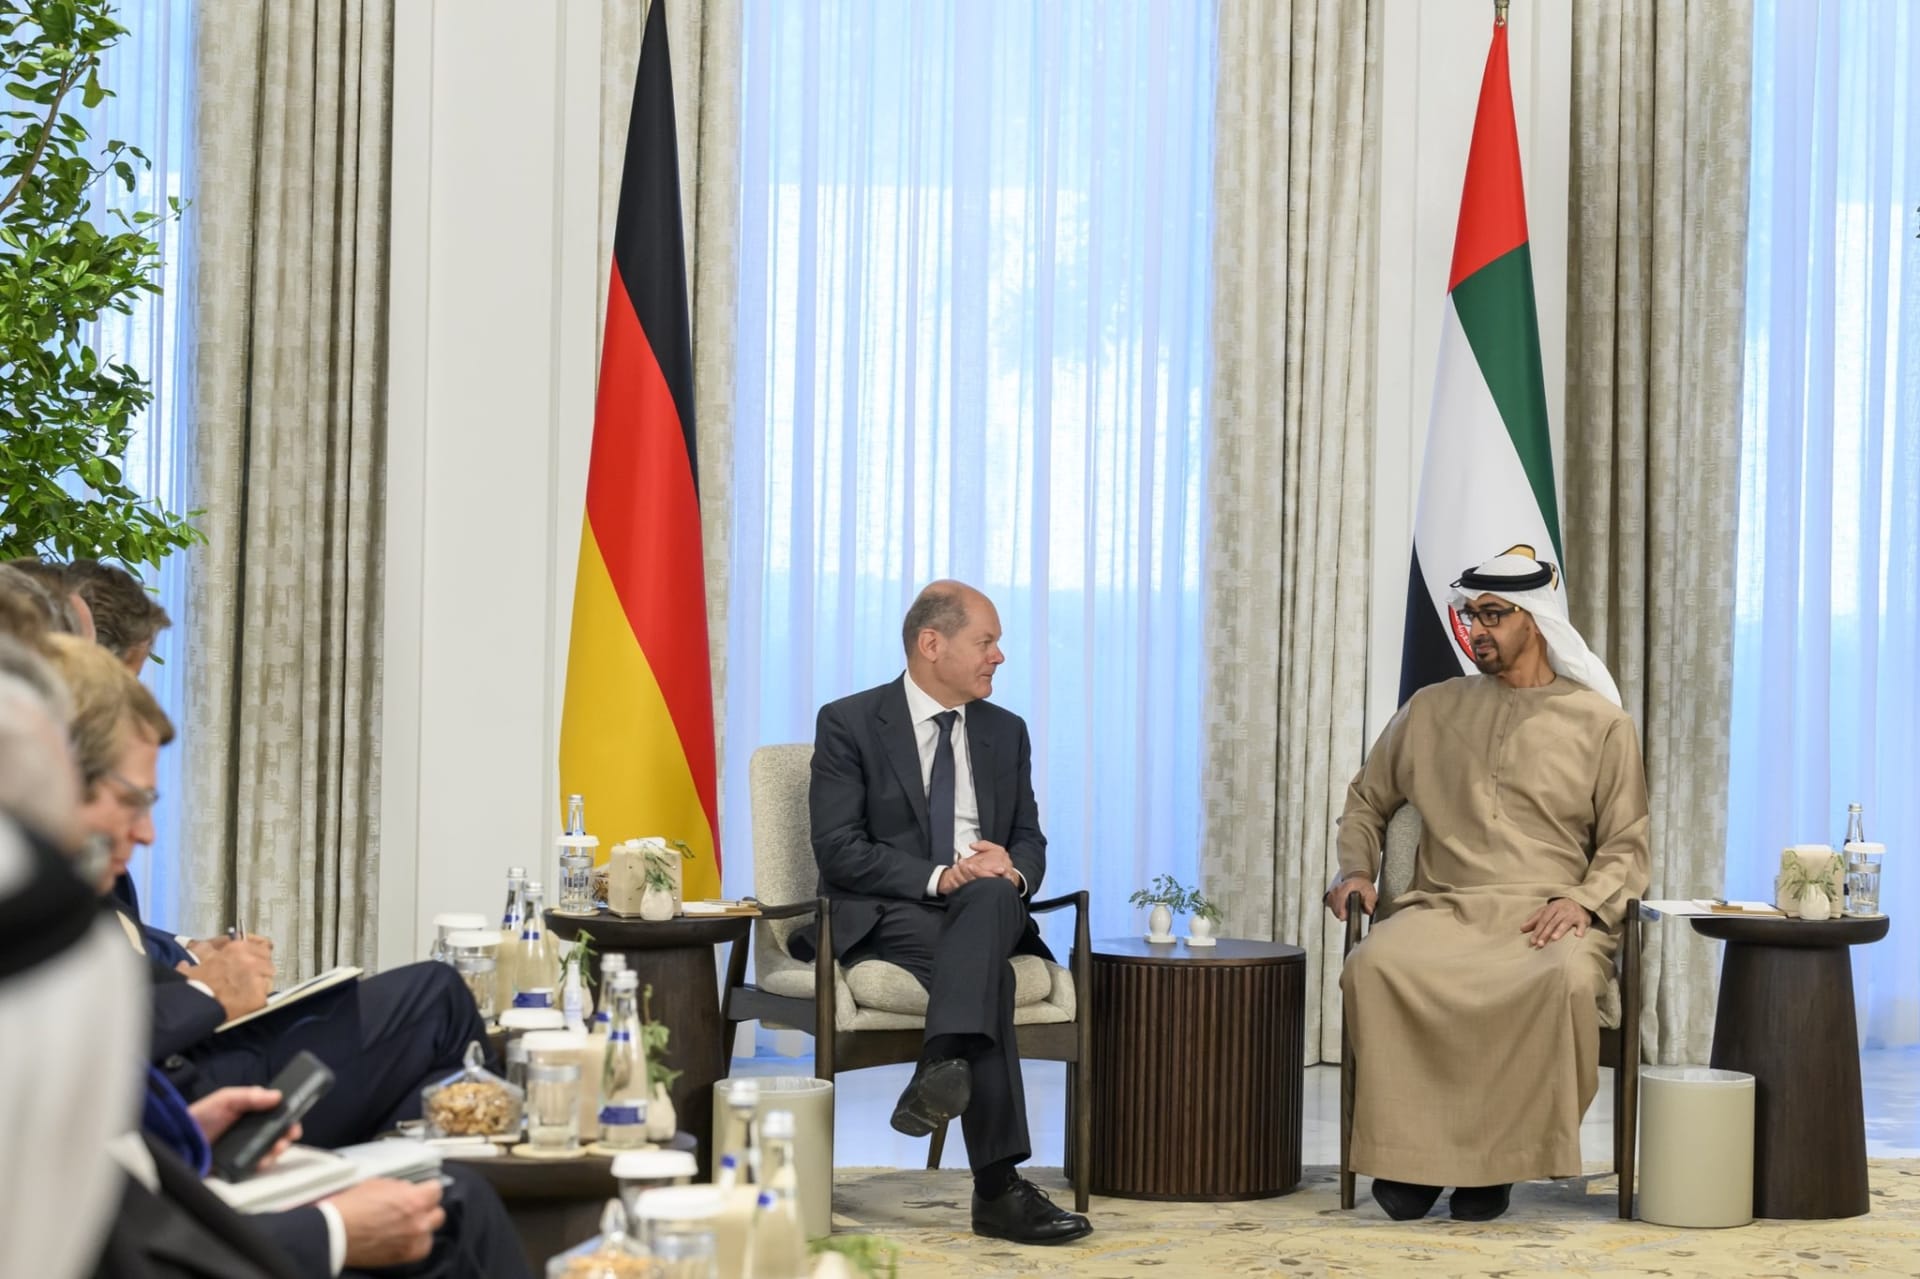 بحضور محمد بن زايد وشولتز.. توقيع اتفاقية شراكة بين الإمارات وألمانيا في مجال أمن الطاقة